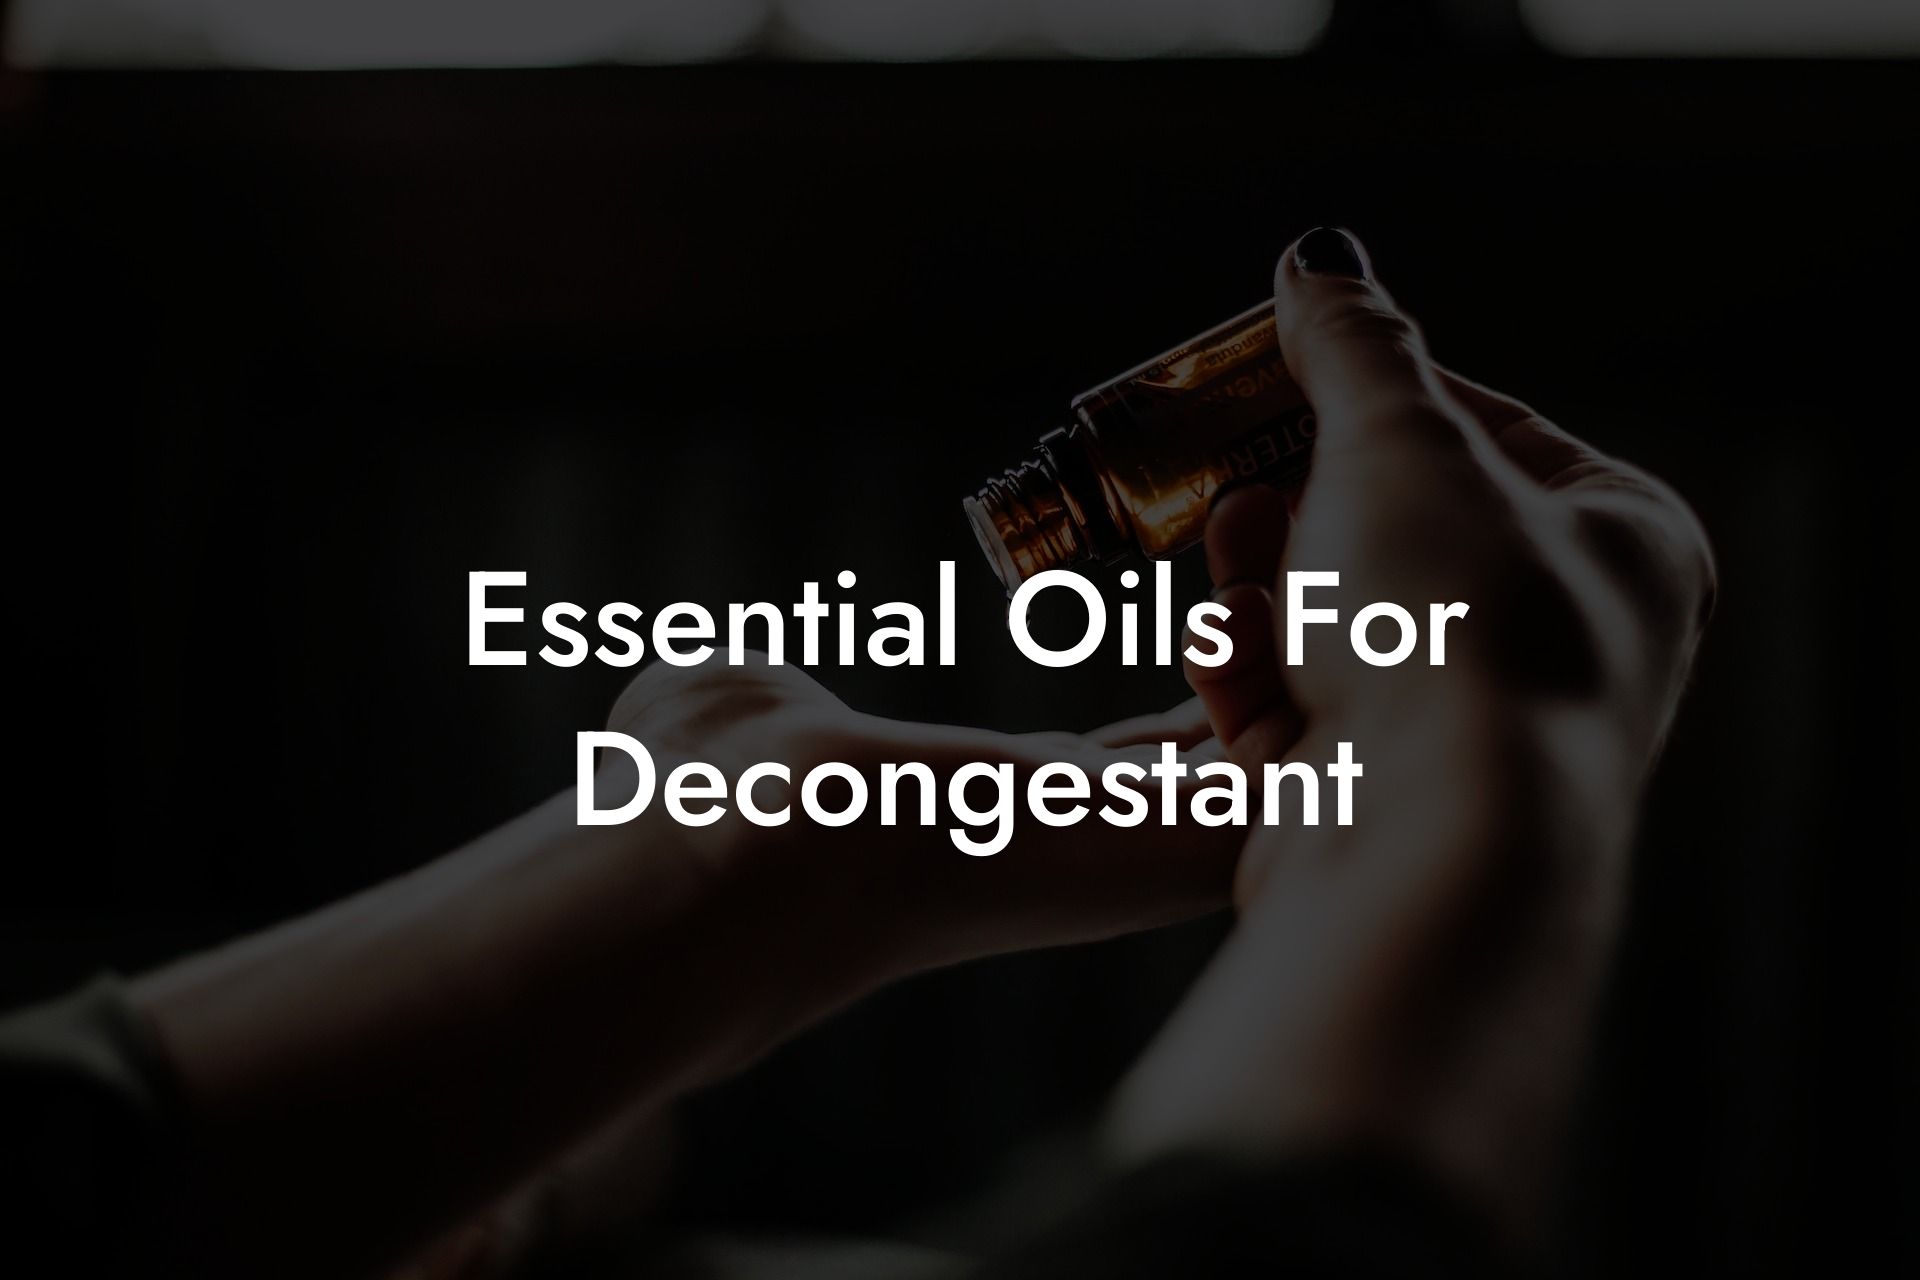 Essential Oils For Decongestant